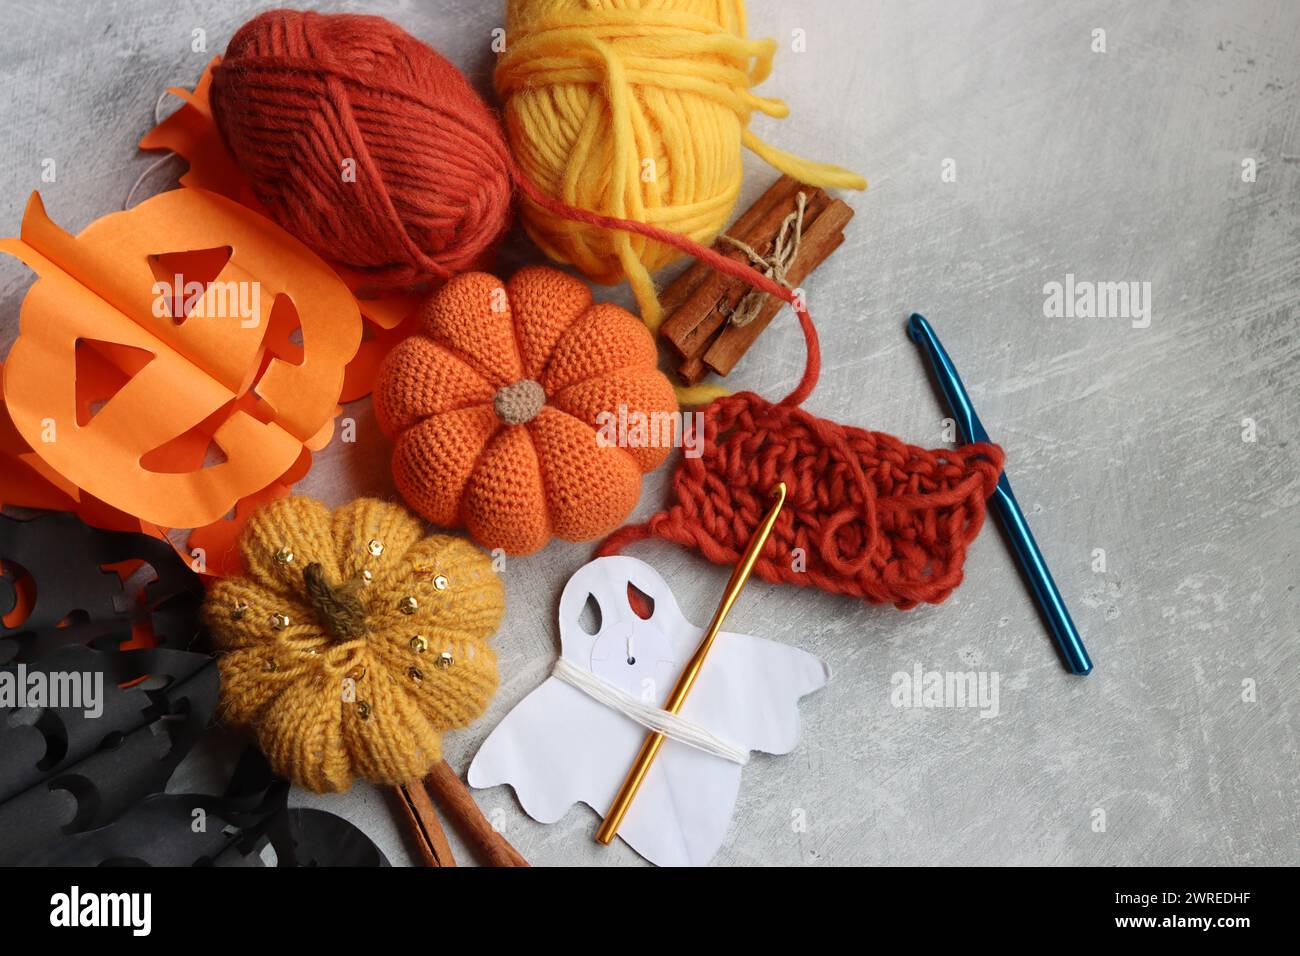 Composition de pose plate avec accessoires de tricot sur fond gris. Décorations faites à la main pour Halloween. Espace pour le texte. Banque D'Images